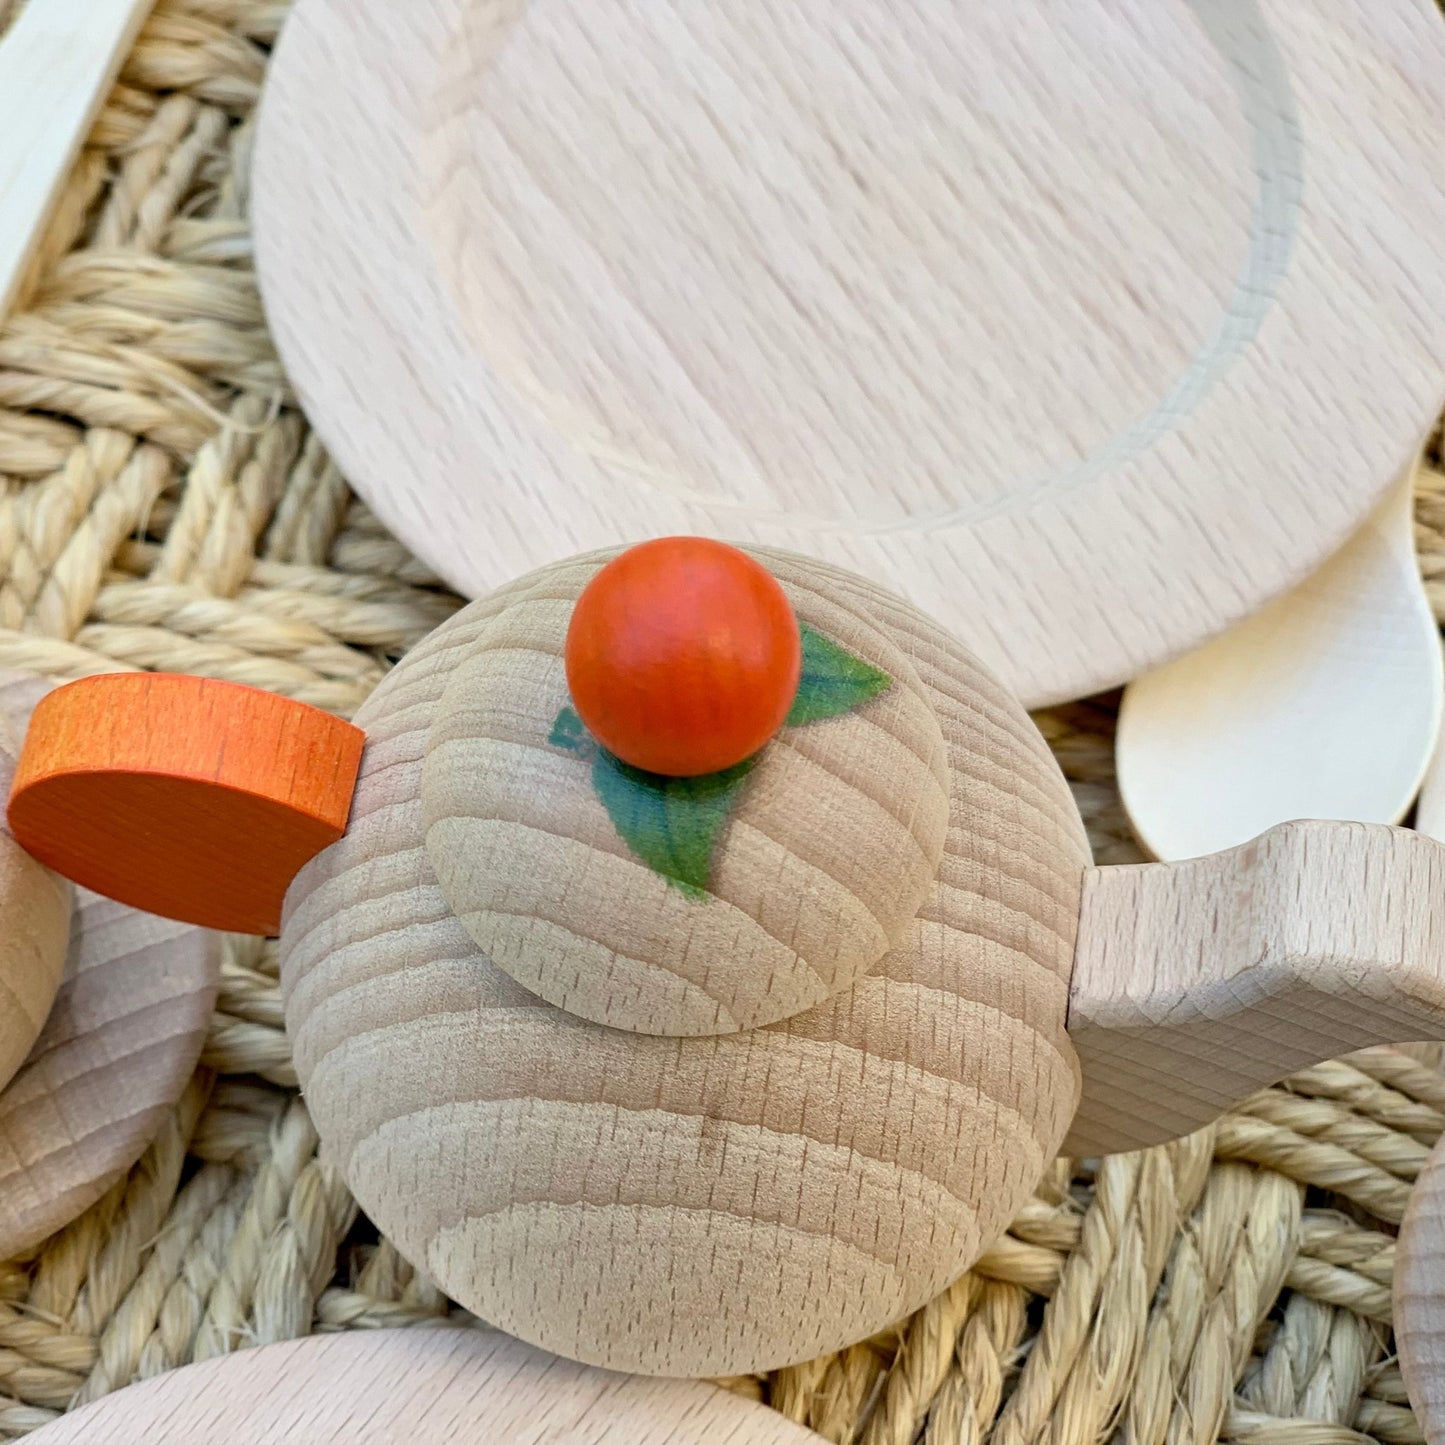 Erzi Wooden Play Kitchen Crockery Set - Natural